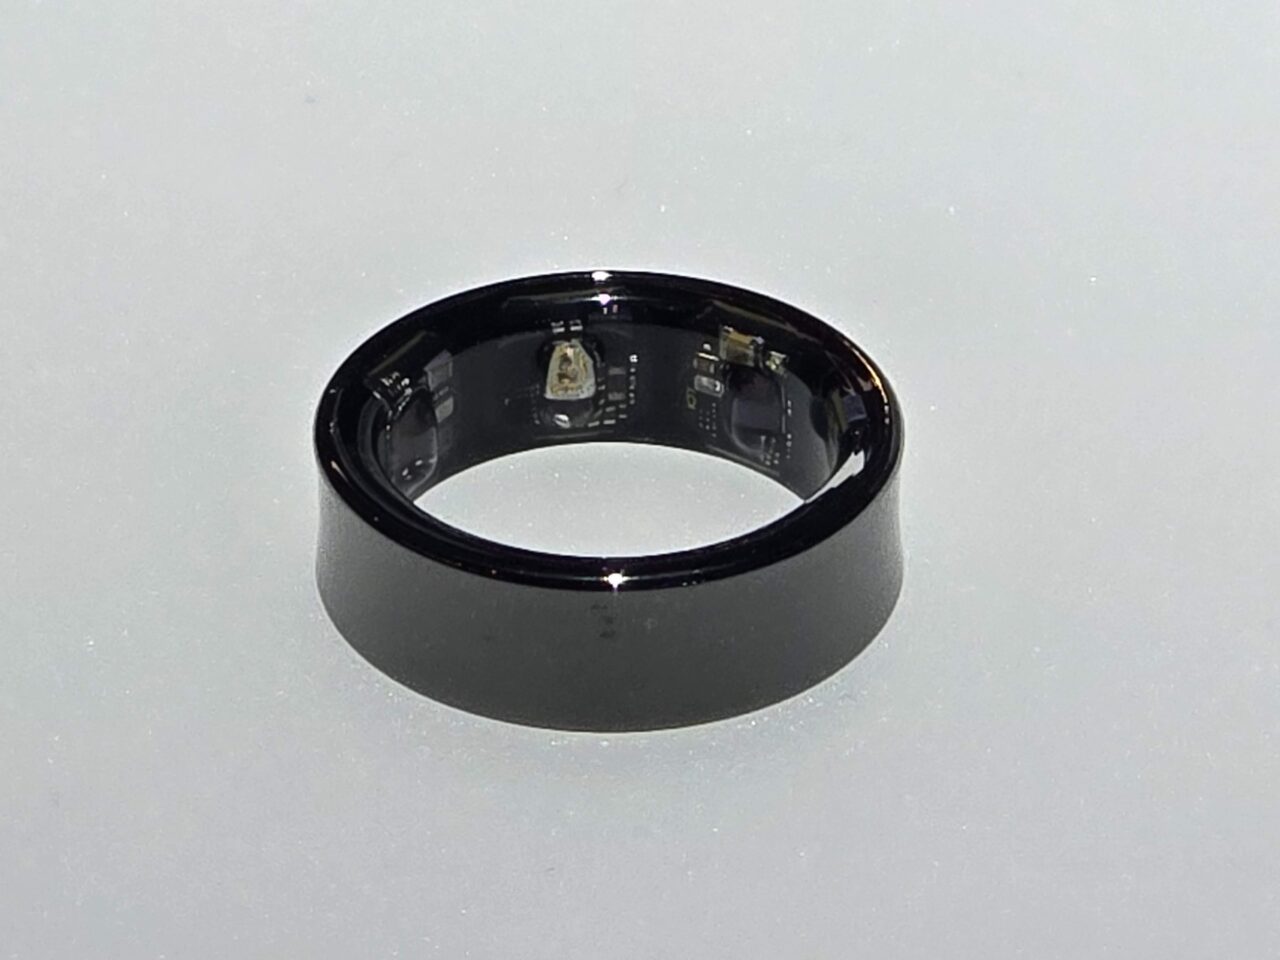 Czarny Samsung Galaxy Ring z widocznymi elementami elektronicznymi wewnątrz, położona na jasnej powierzchni.